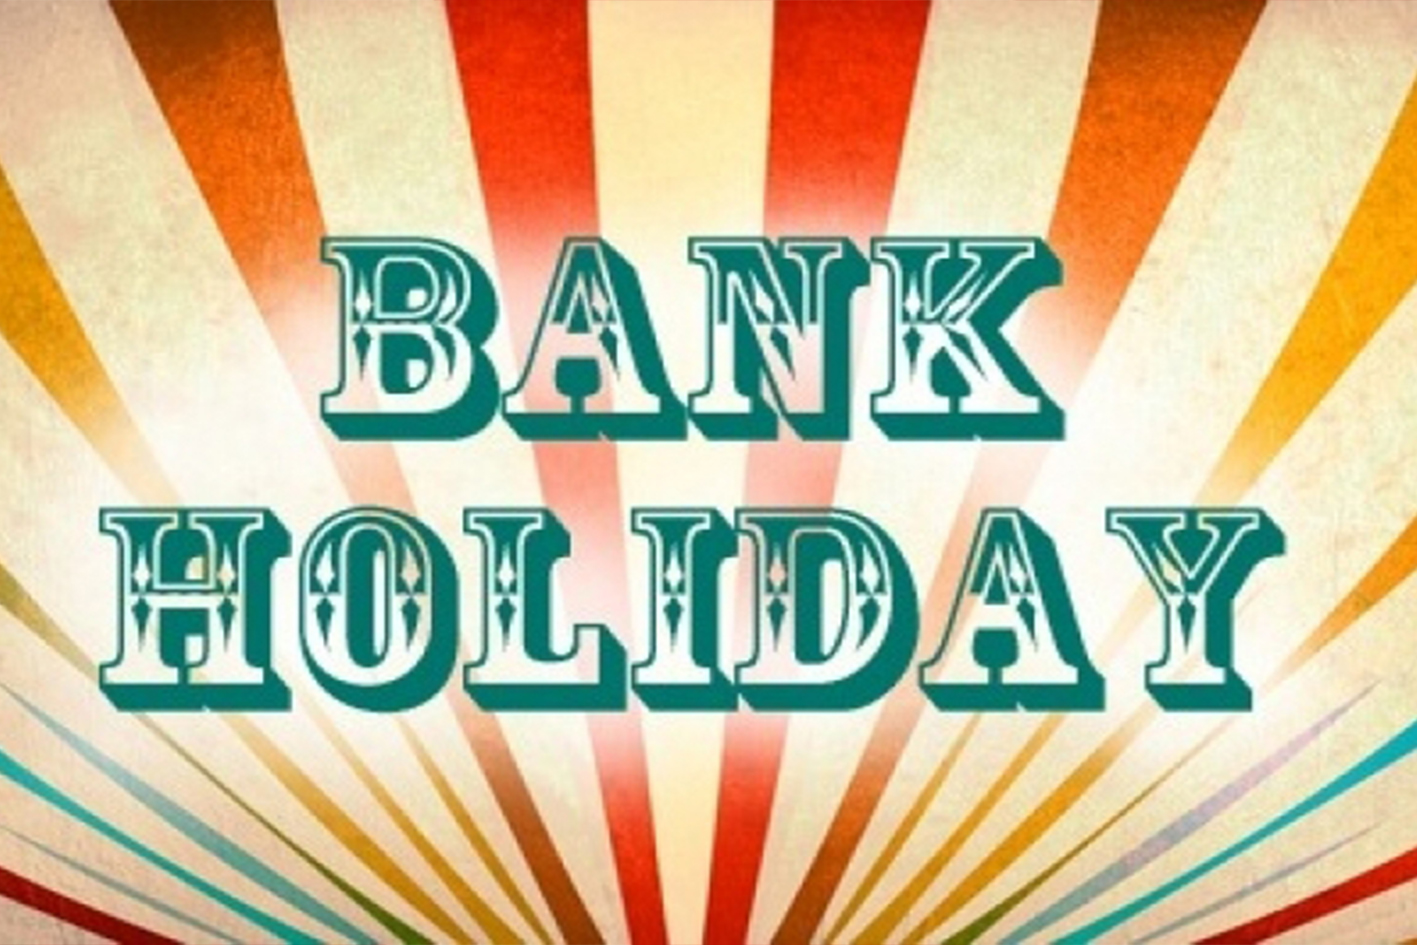 Summer Bank Holiday